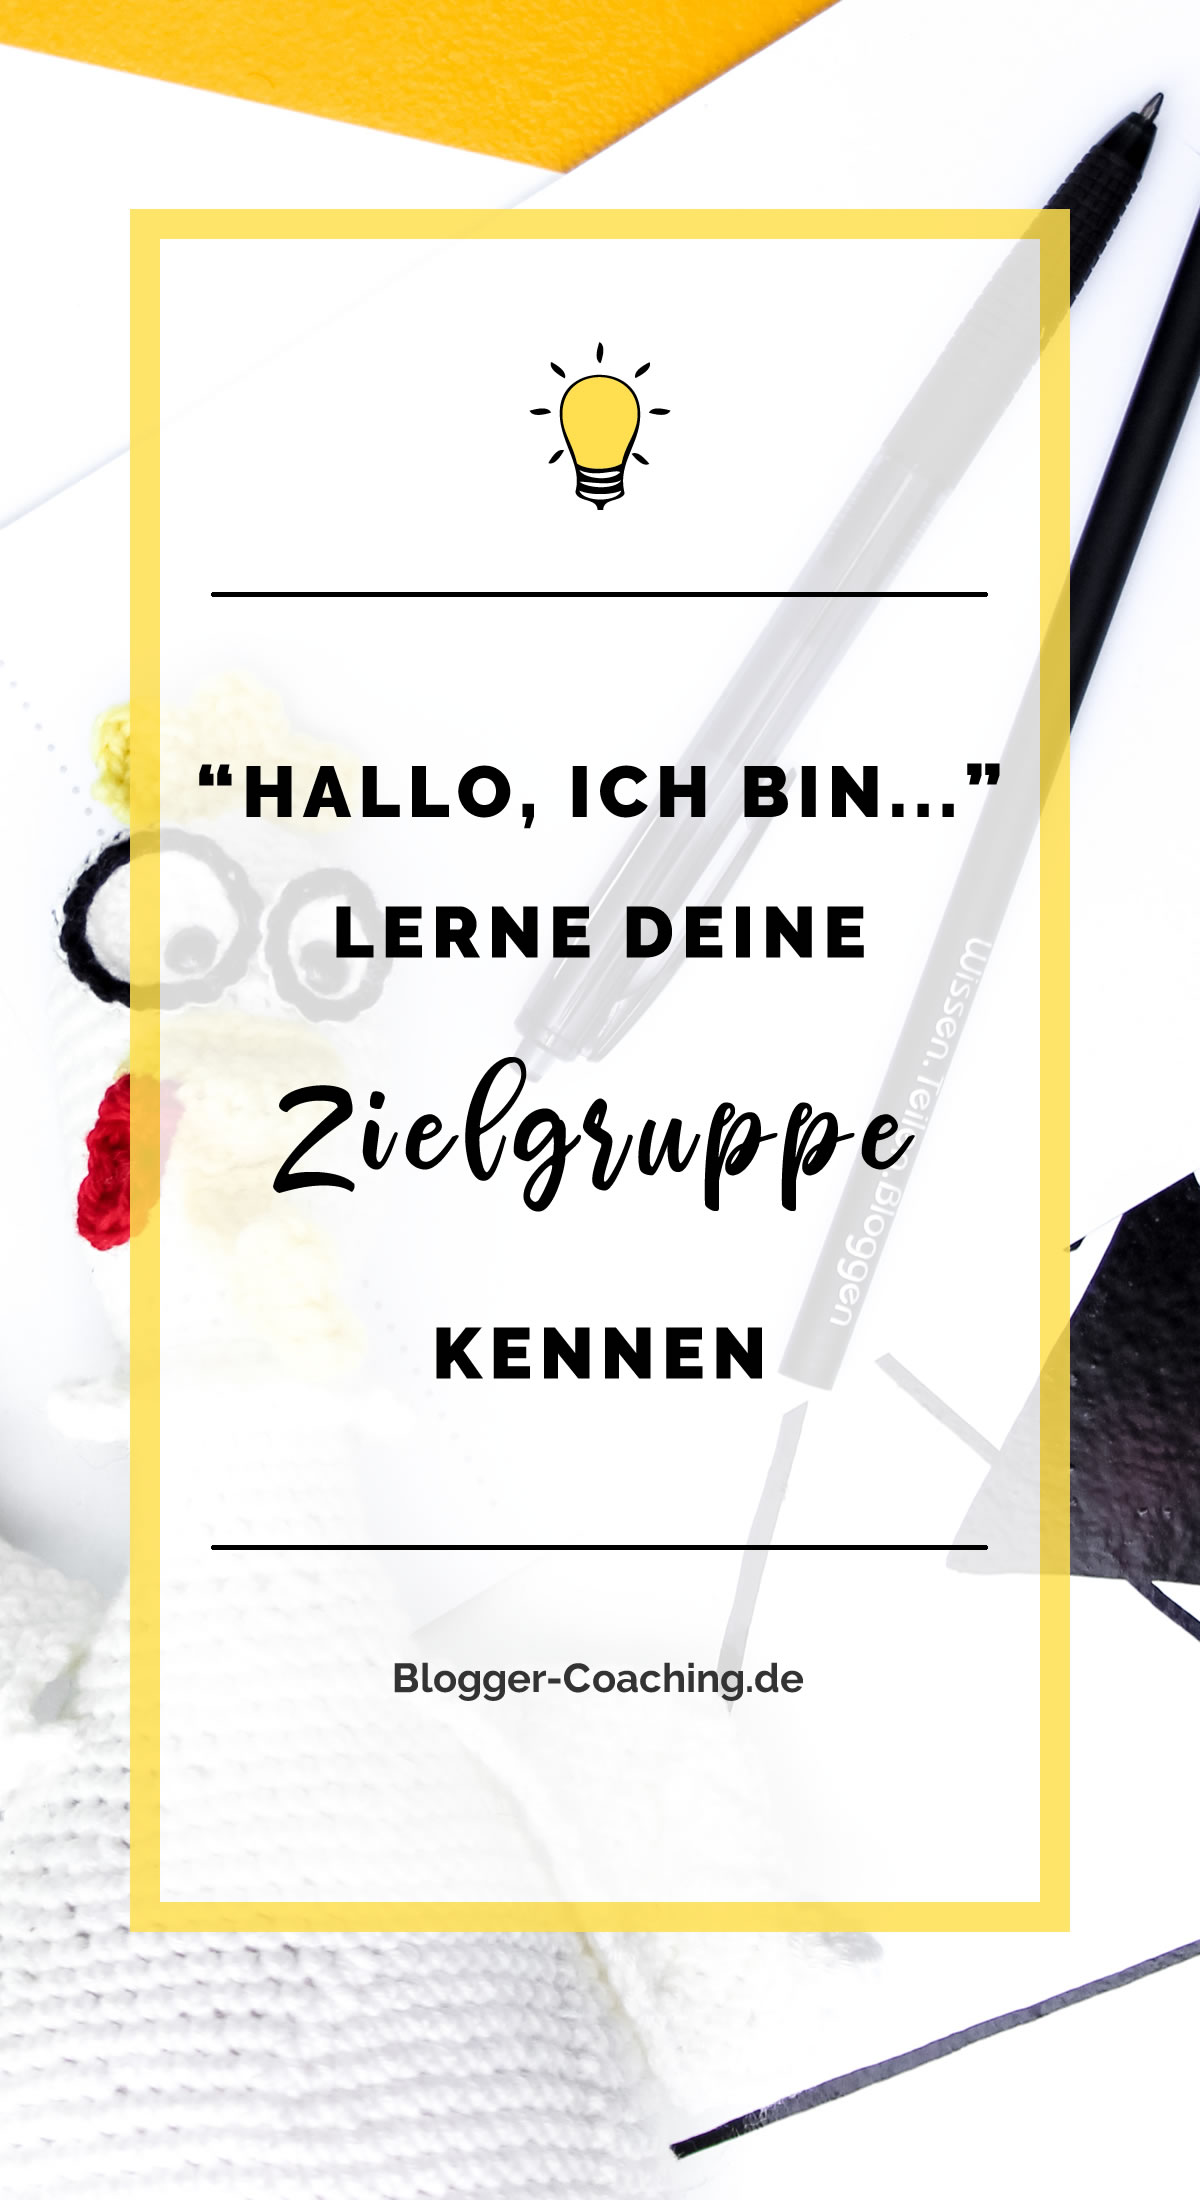 "Hallo, ich bin..." Lerne deine Zielgruppe kennen | Blogger-Coaching.de - Dein Weg zum Blog-Erfolg #blogger #erfolg